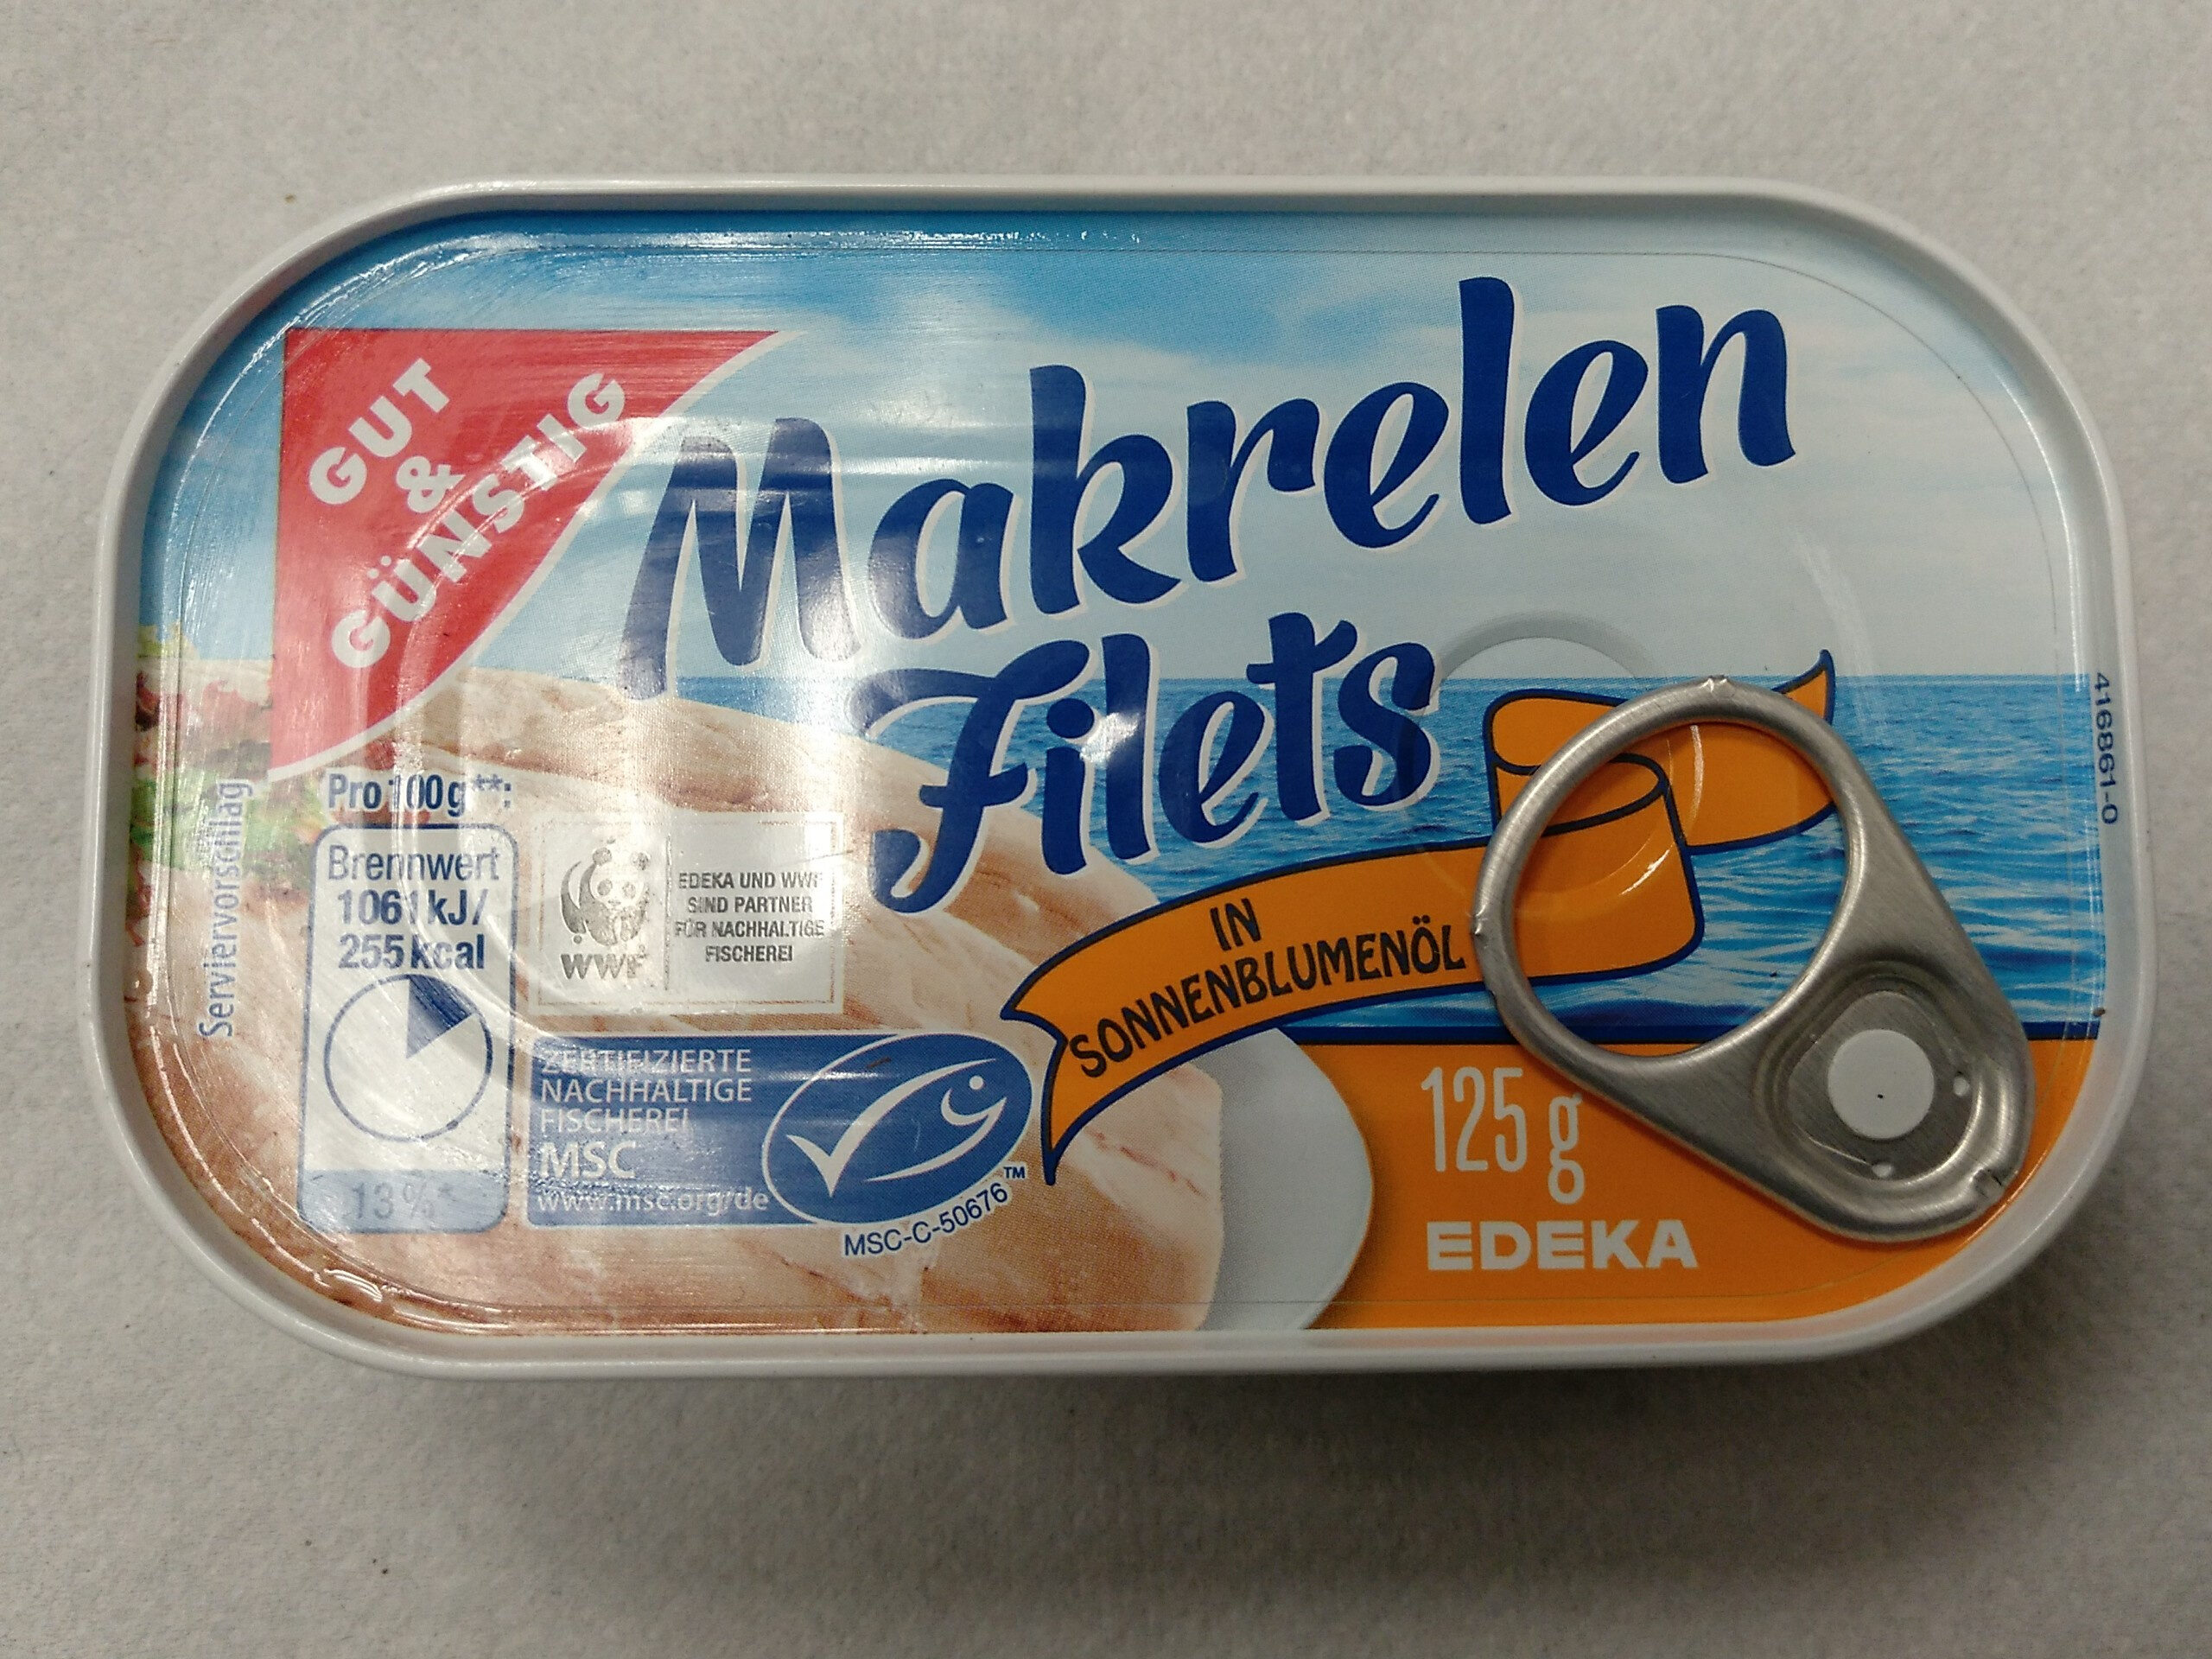 Makrelen Filets - Product - de